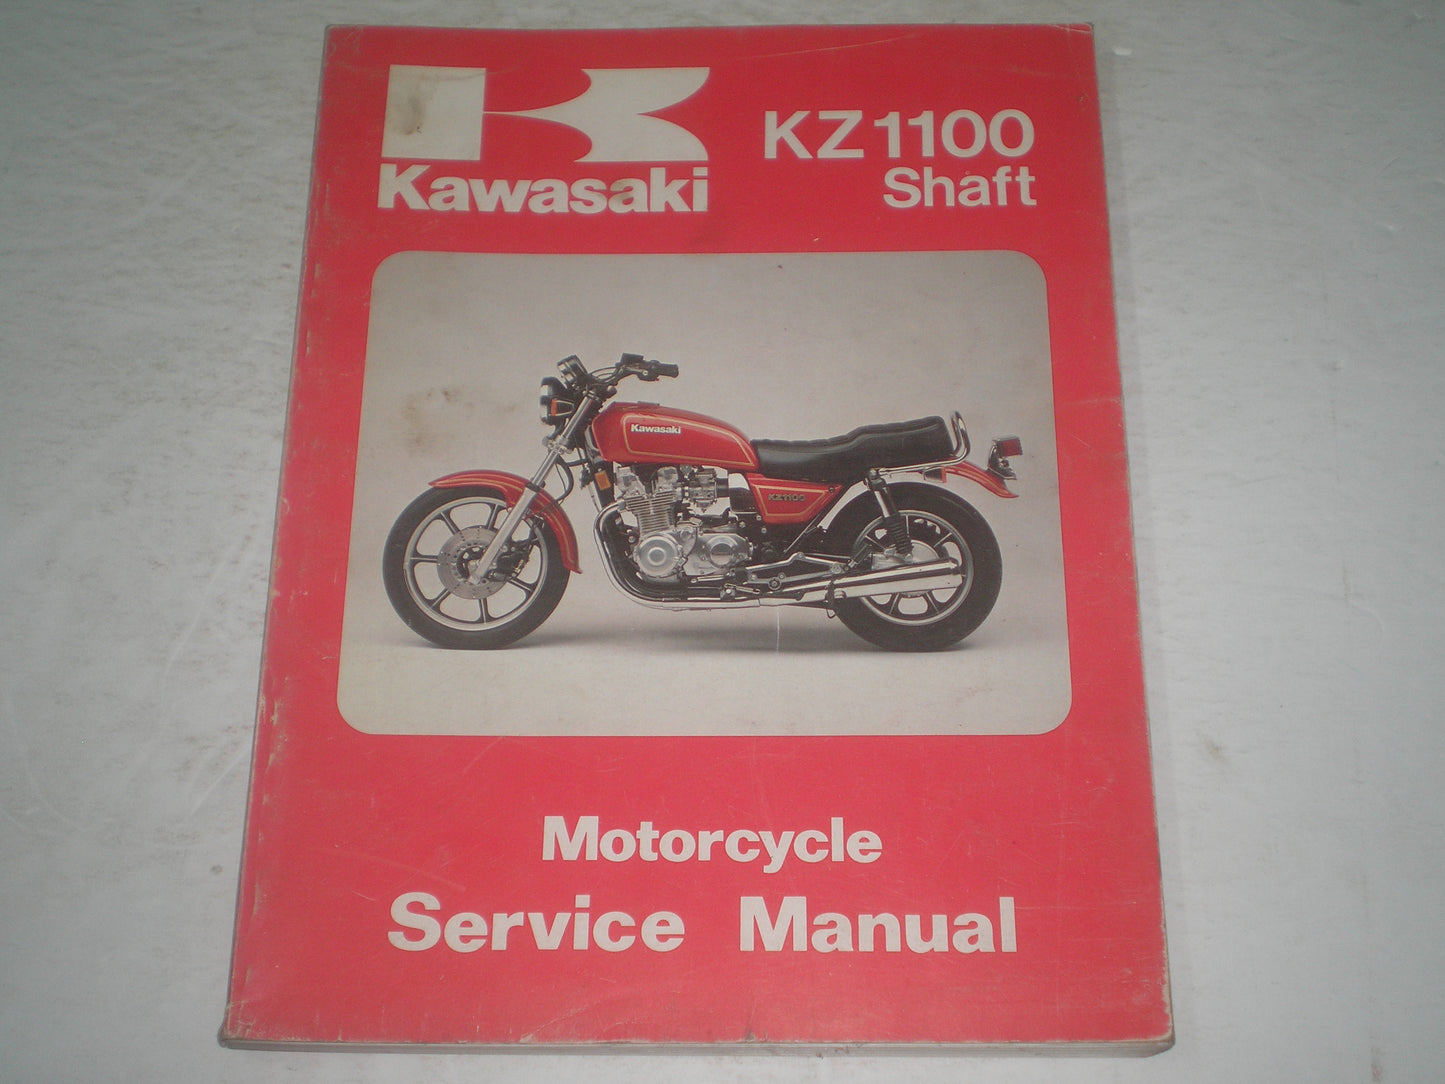 KAWASAKI KZ1100  Z1100  Shaft  1981 1982 1983  Service Manual  99924-1032-02  #1249